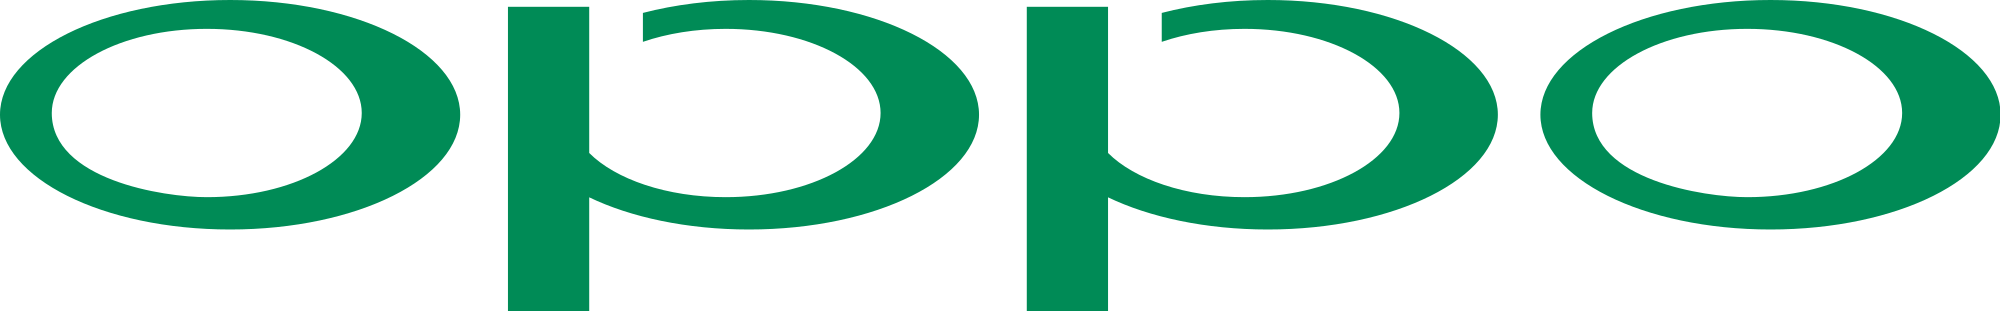 Oppo Mobile Logo - 